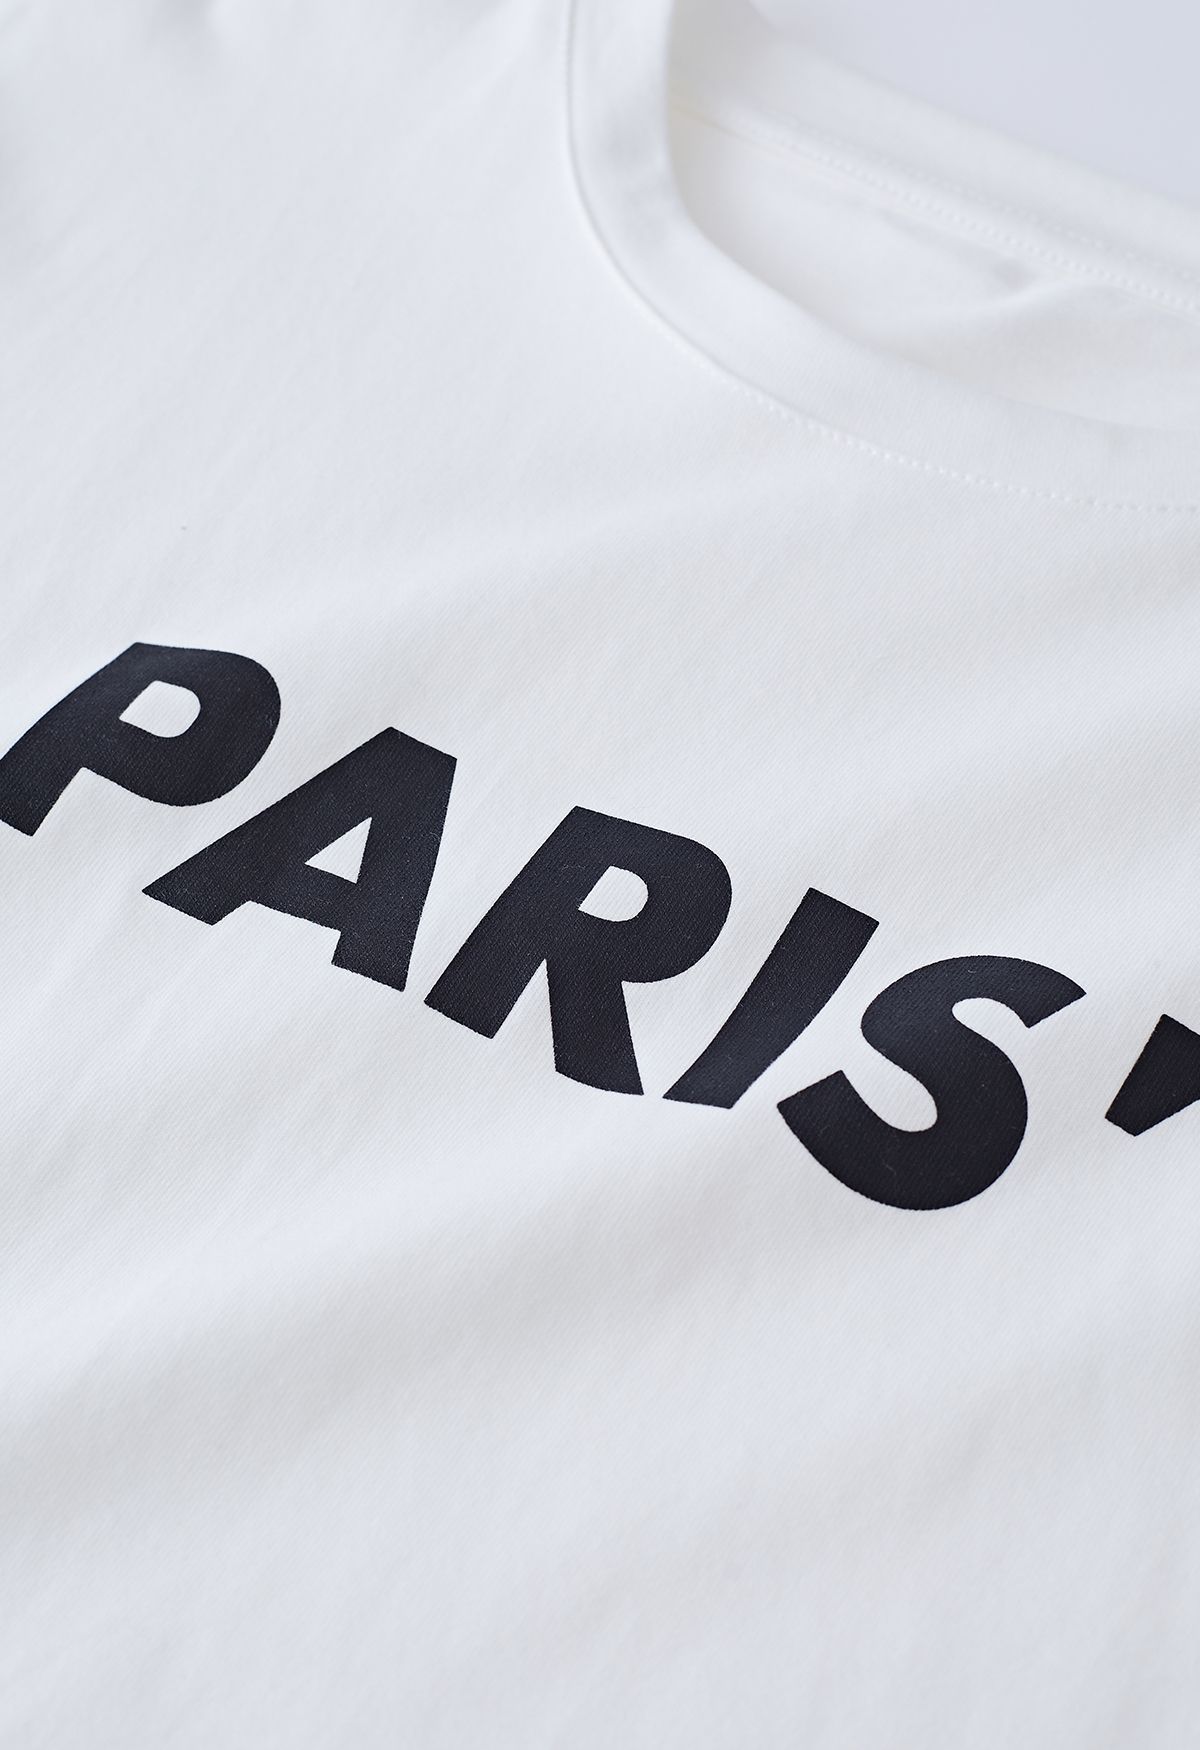 Rundhals-T-Shirt mit Paris-Print in Weiß